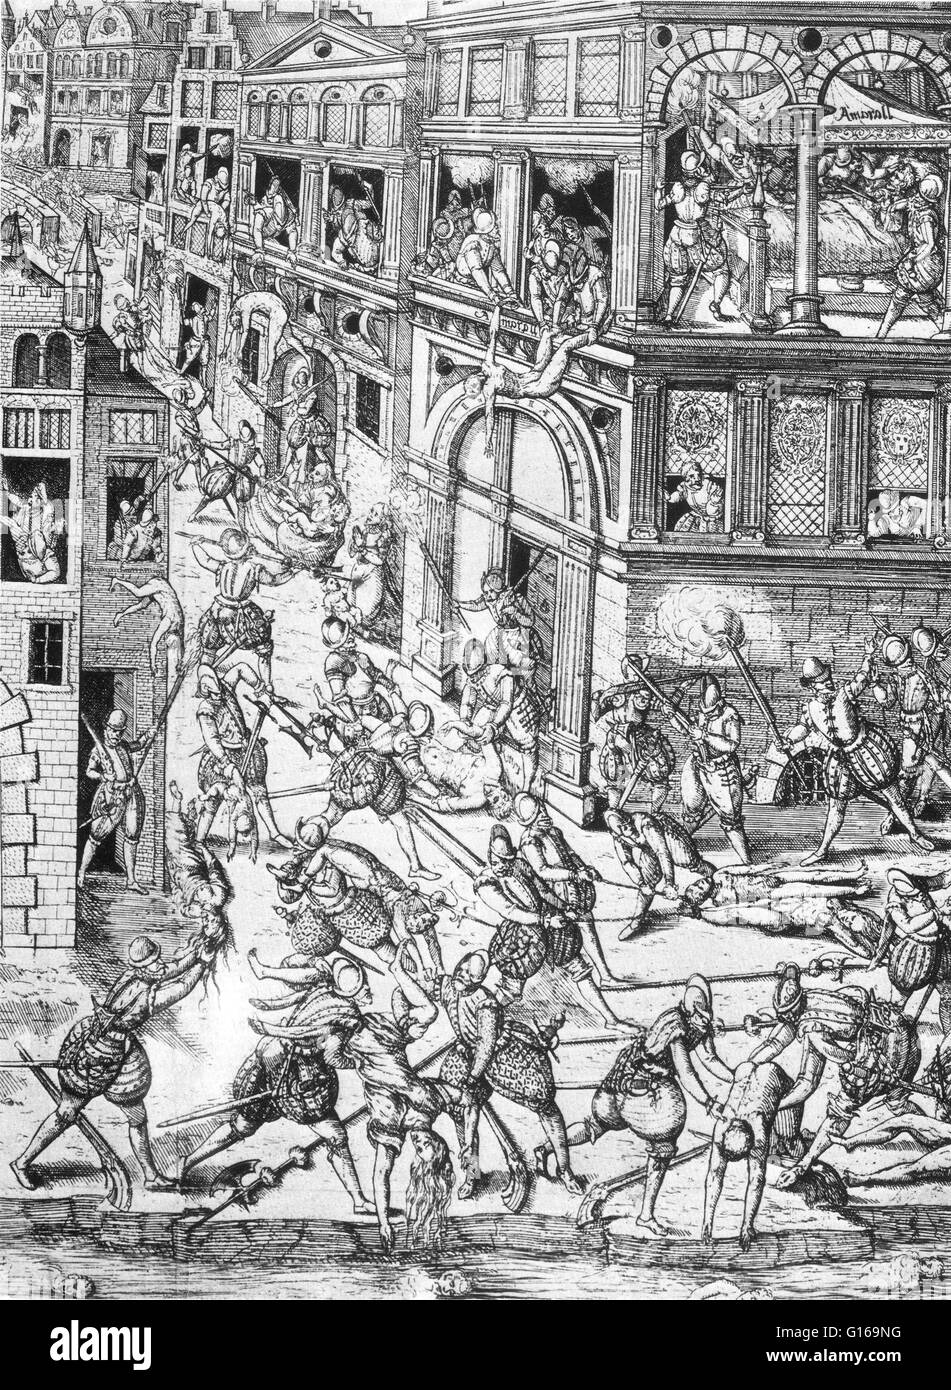 Le massacre de la Saint-Barthélemy en 1572 était un groupe cible d'assassinats, suivie par une vague de violence collective Catholique Romaine, tous deux dirigés contre les Huguenots, pendant les Guerres de Religion. Traditionnellement admis d'avoir été à l'initiative de Catherine de Médicis. Le massacre a commencé le 23 août 1572, deux jours après la tentative d'assassinat de l'amiral Gaspard de Coligny, le chef militaire et politique des Huguenots. Le roi ordonne le meurtre d'un groupe de chefs huguenots, dont Coligny, et l'abattage répartis dans tout Paris. Durant plusieurs semaines, le massac Banque D'Images